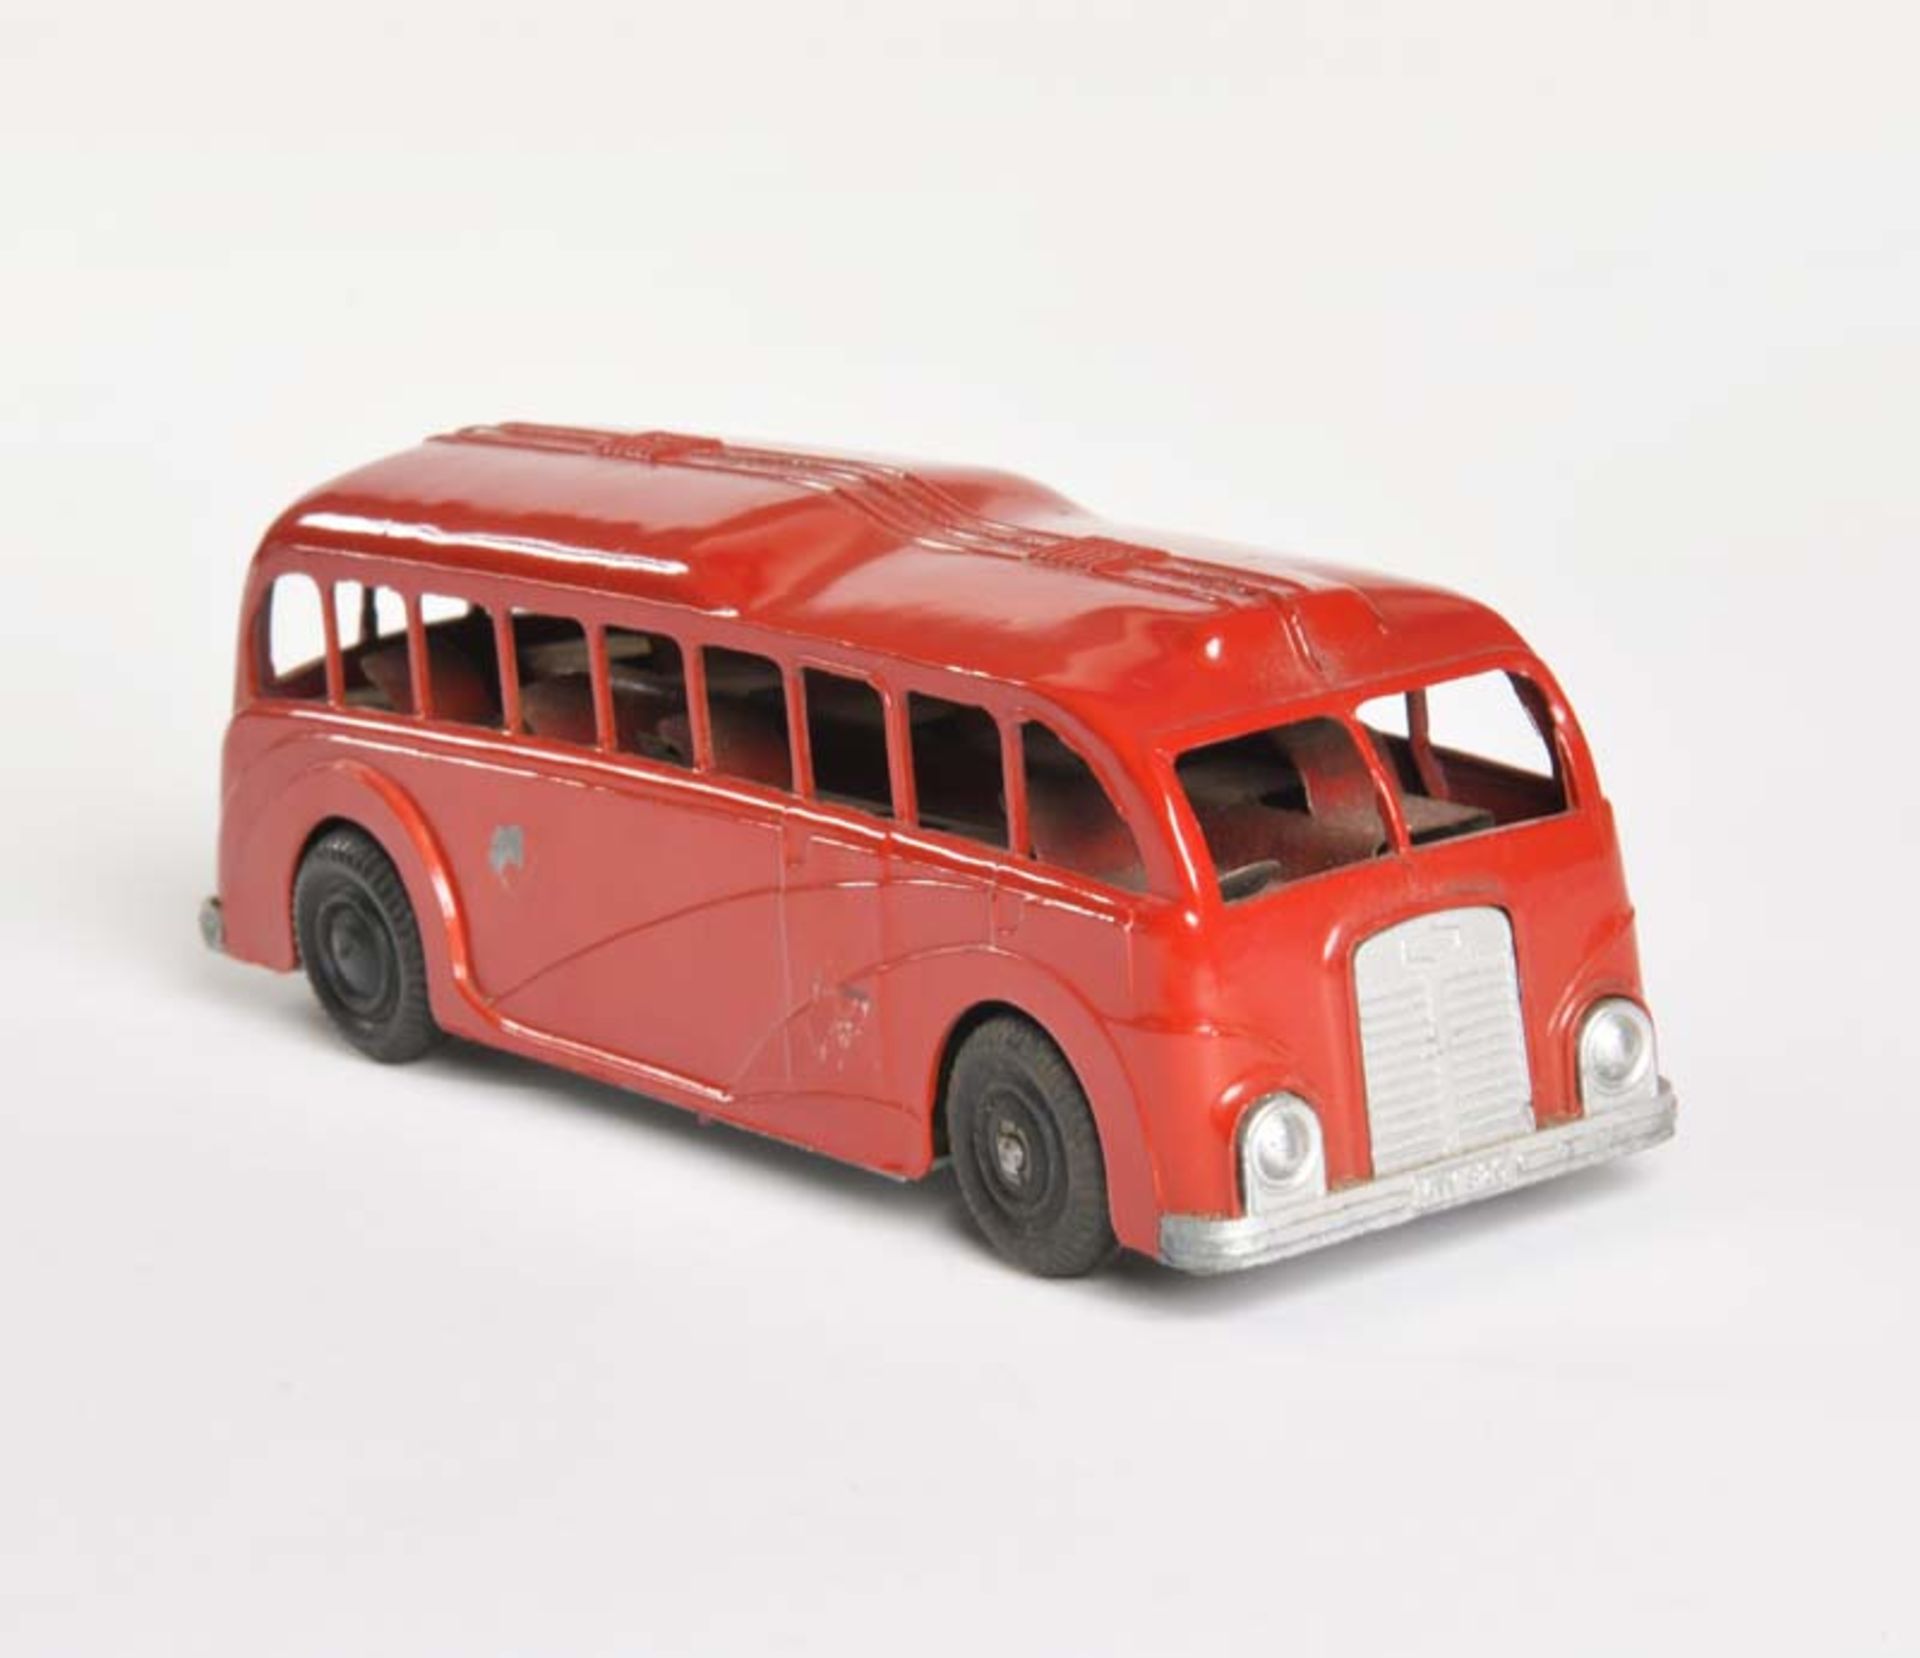 Mettoy, Reisebus, Great Britain, 18,5 cm, Druckguss, UW ok, min. LM, Z 2+ - Bild 3 aus 4